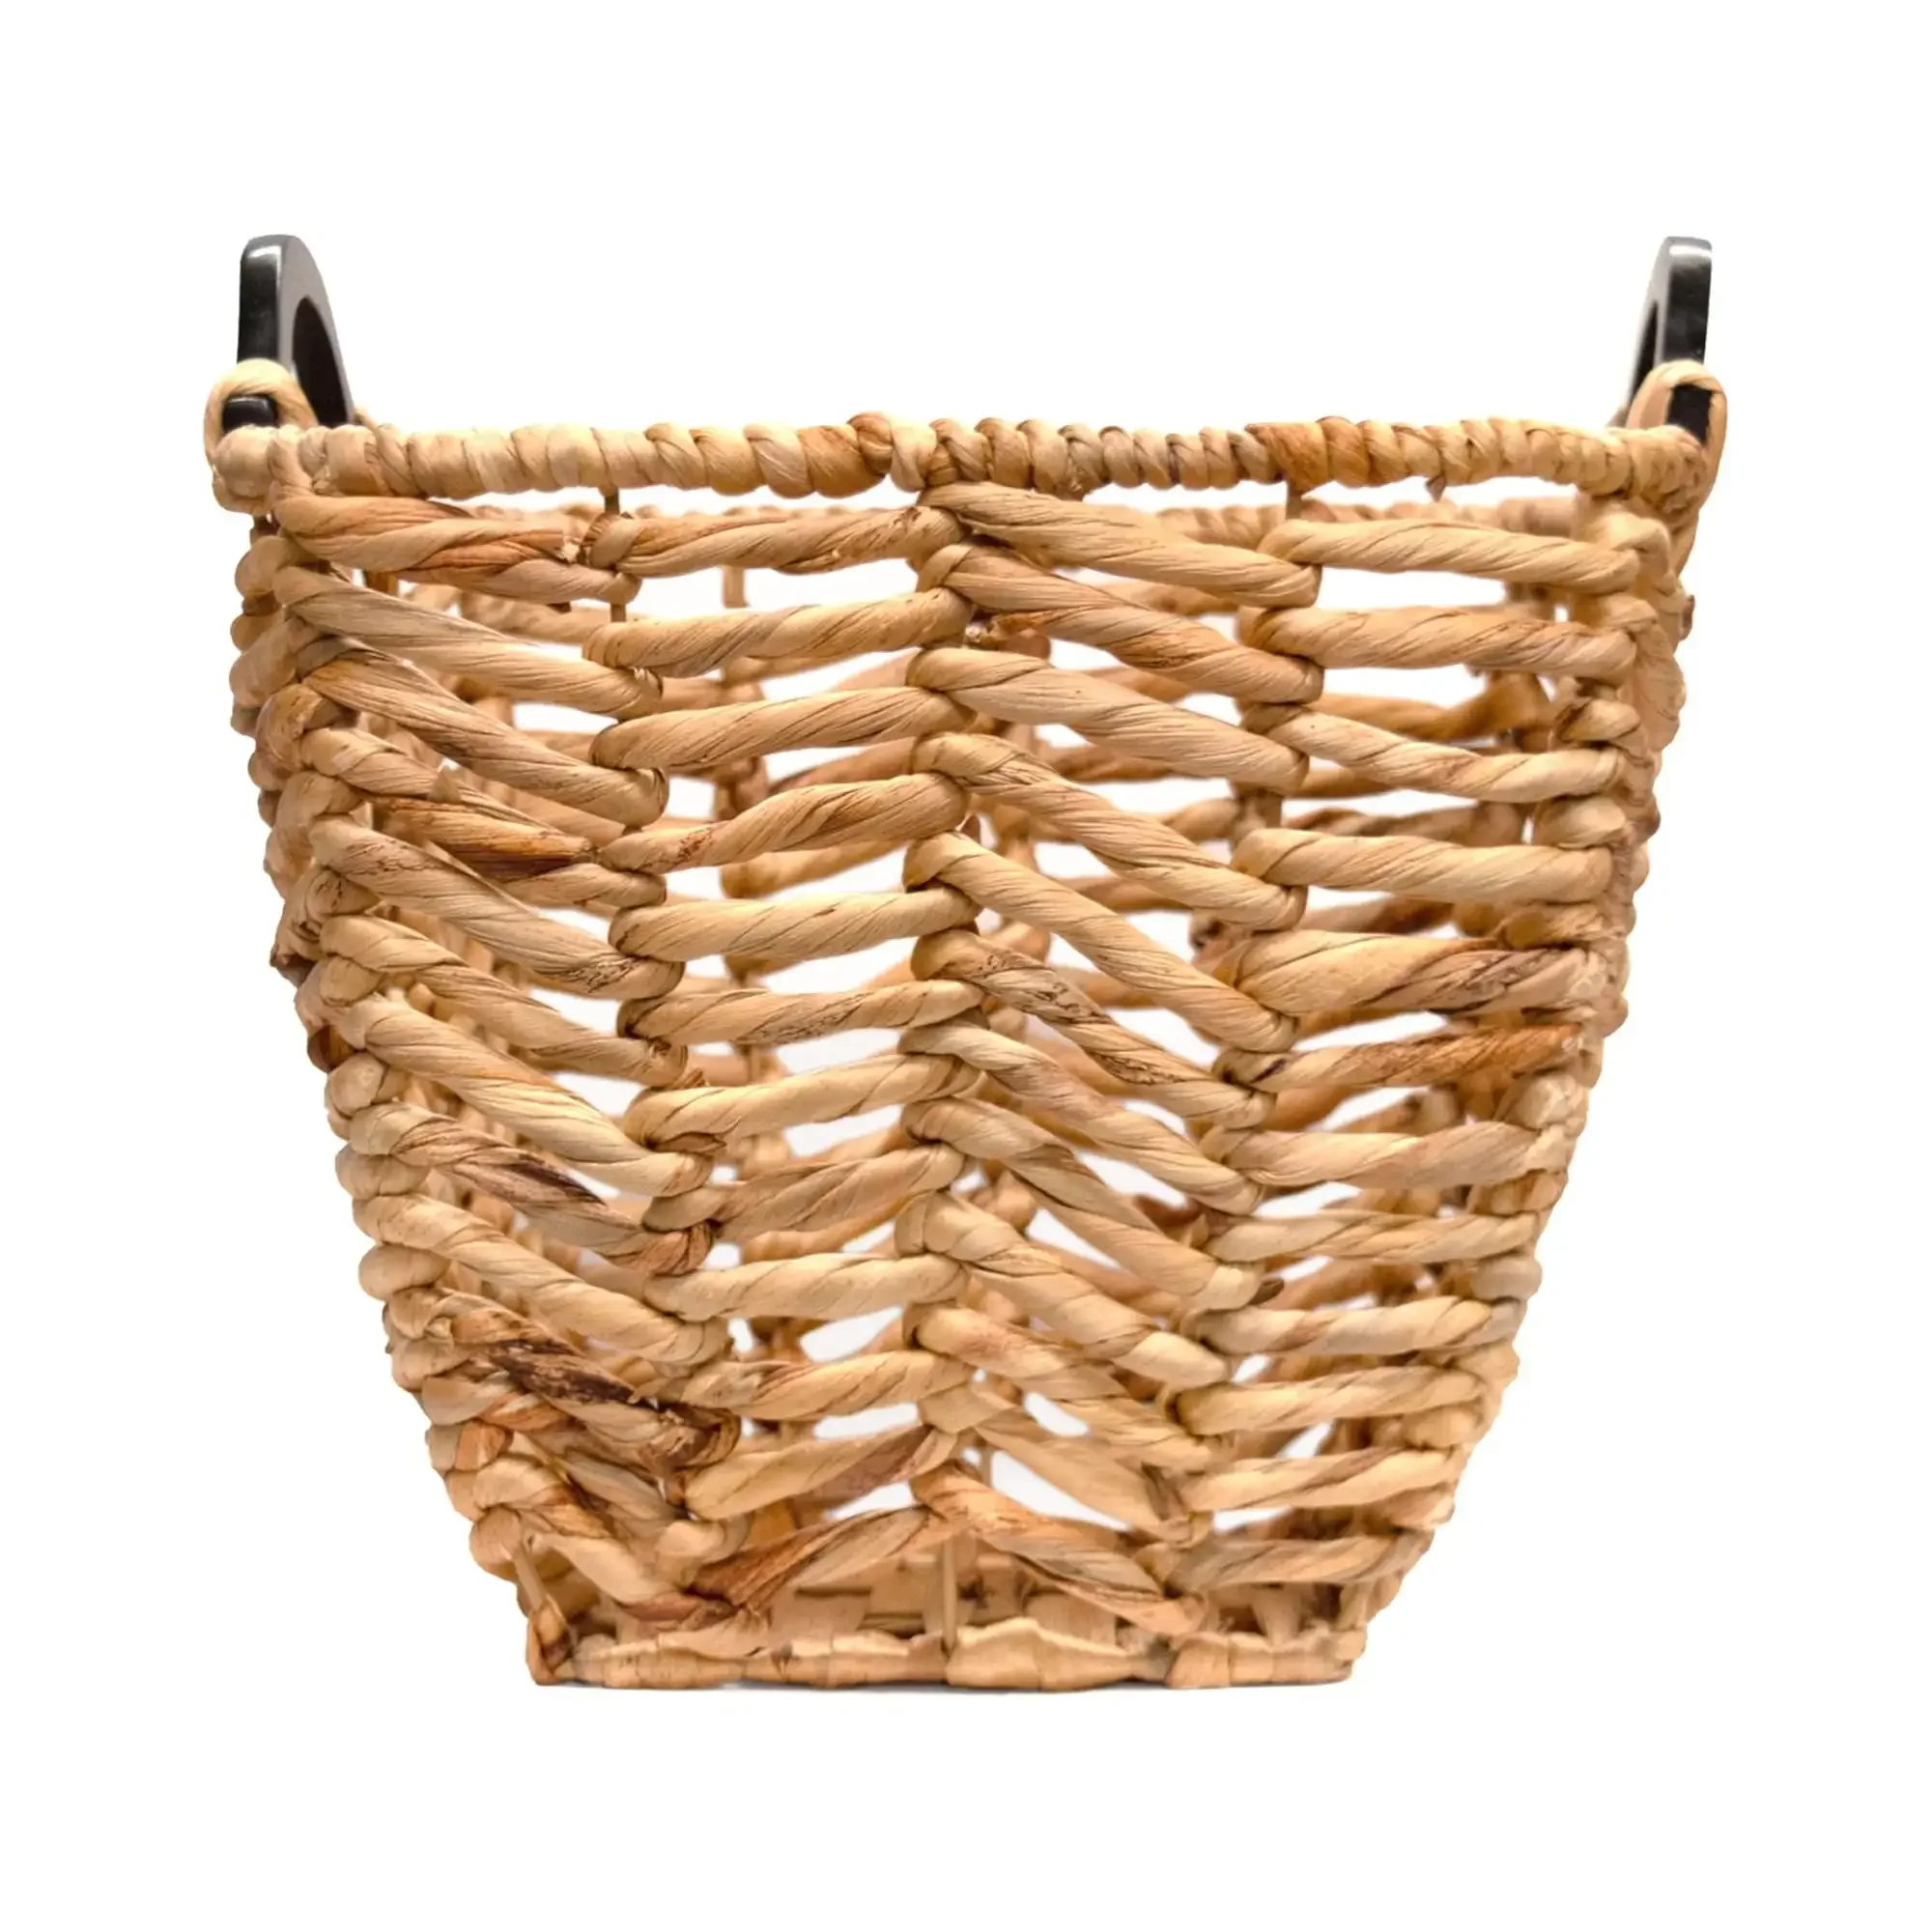 https://ae01.alicdn.com/kf/S6ce4a73c5aa14c9f82bcfa22d39b7c81q/Natural-Brown-Seagrass-Storage-Basket-with-Wooden-Handles-storage-baskets-Rapid-Transit.jpg